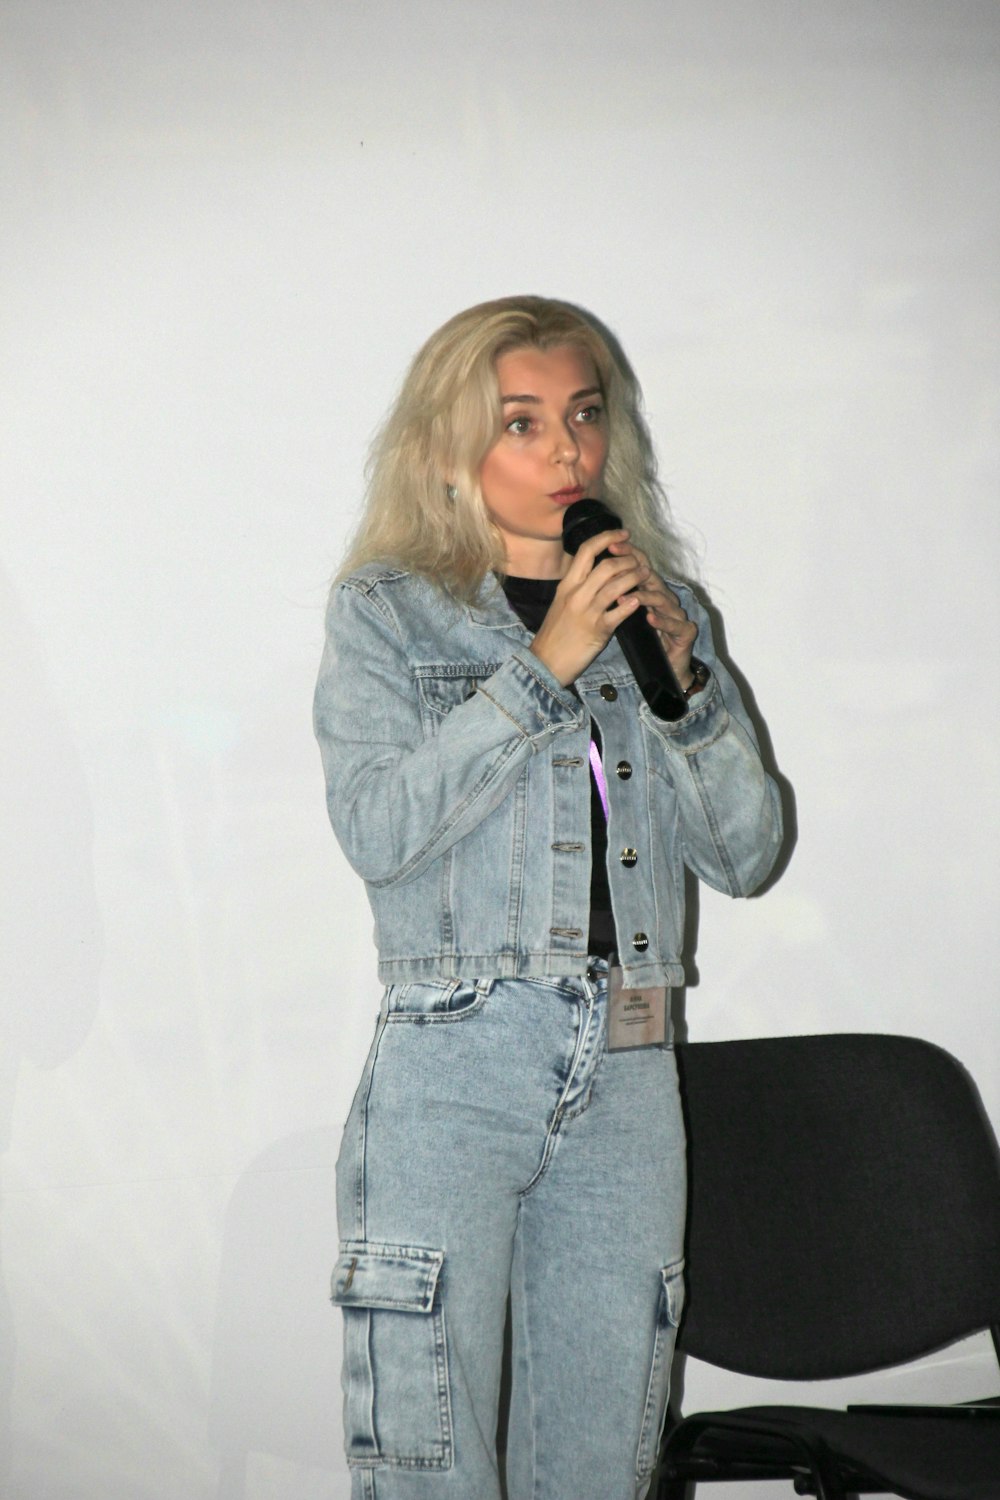 Eine Frau, die vor einer weißen Wand steht und ein Mikrofon hält